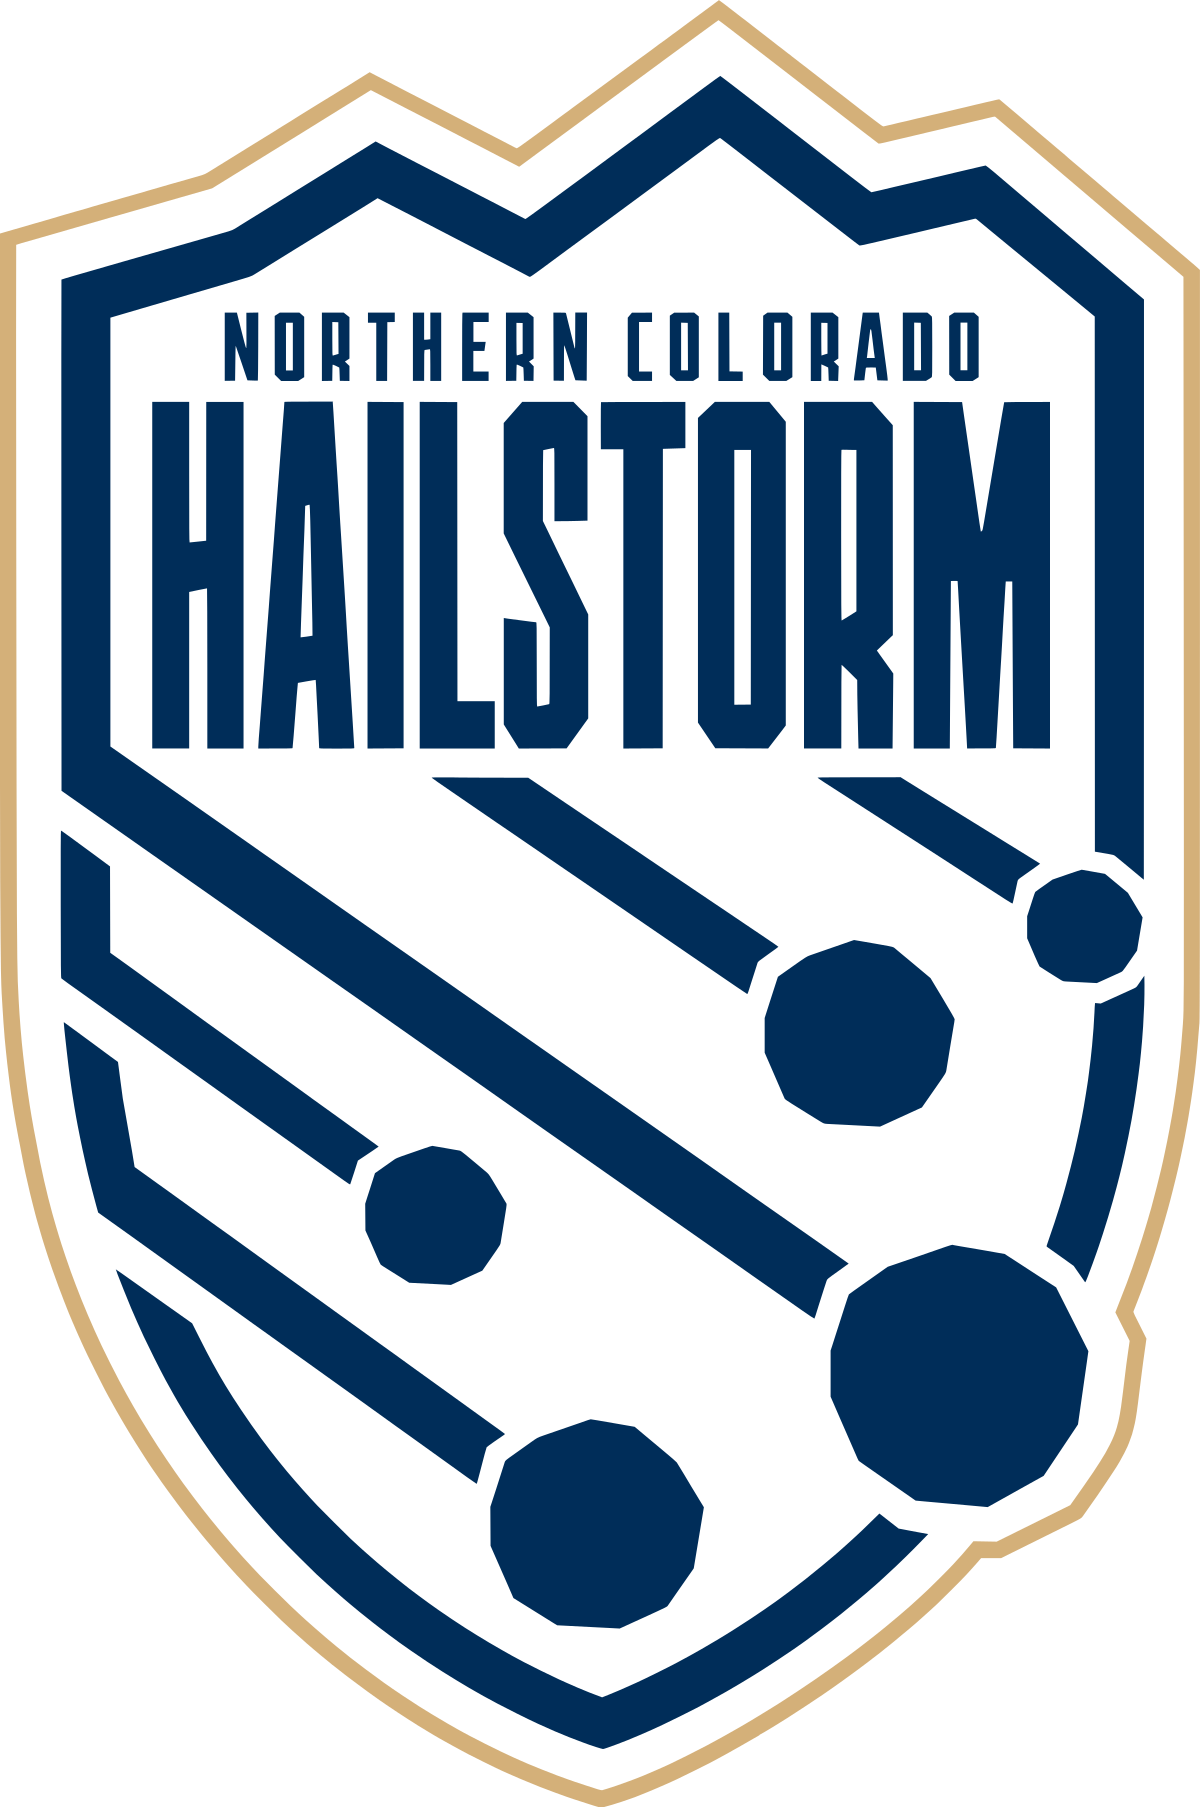 Northern Colorado Hailstorm